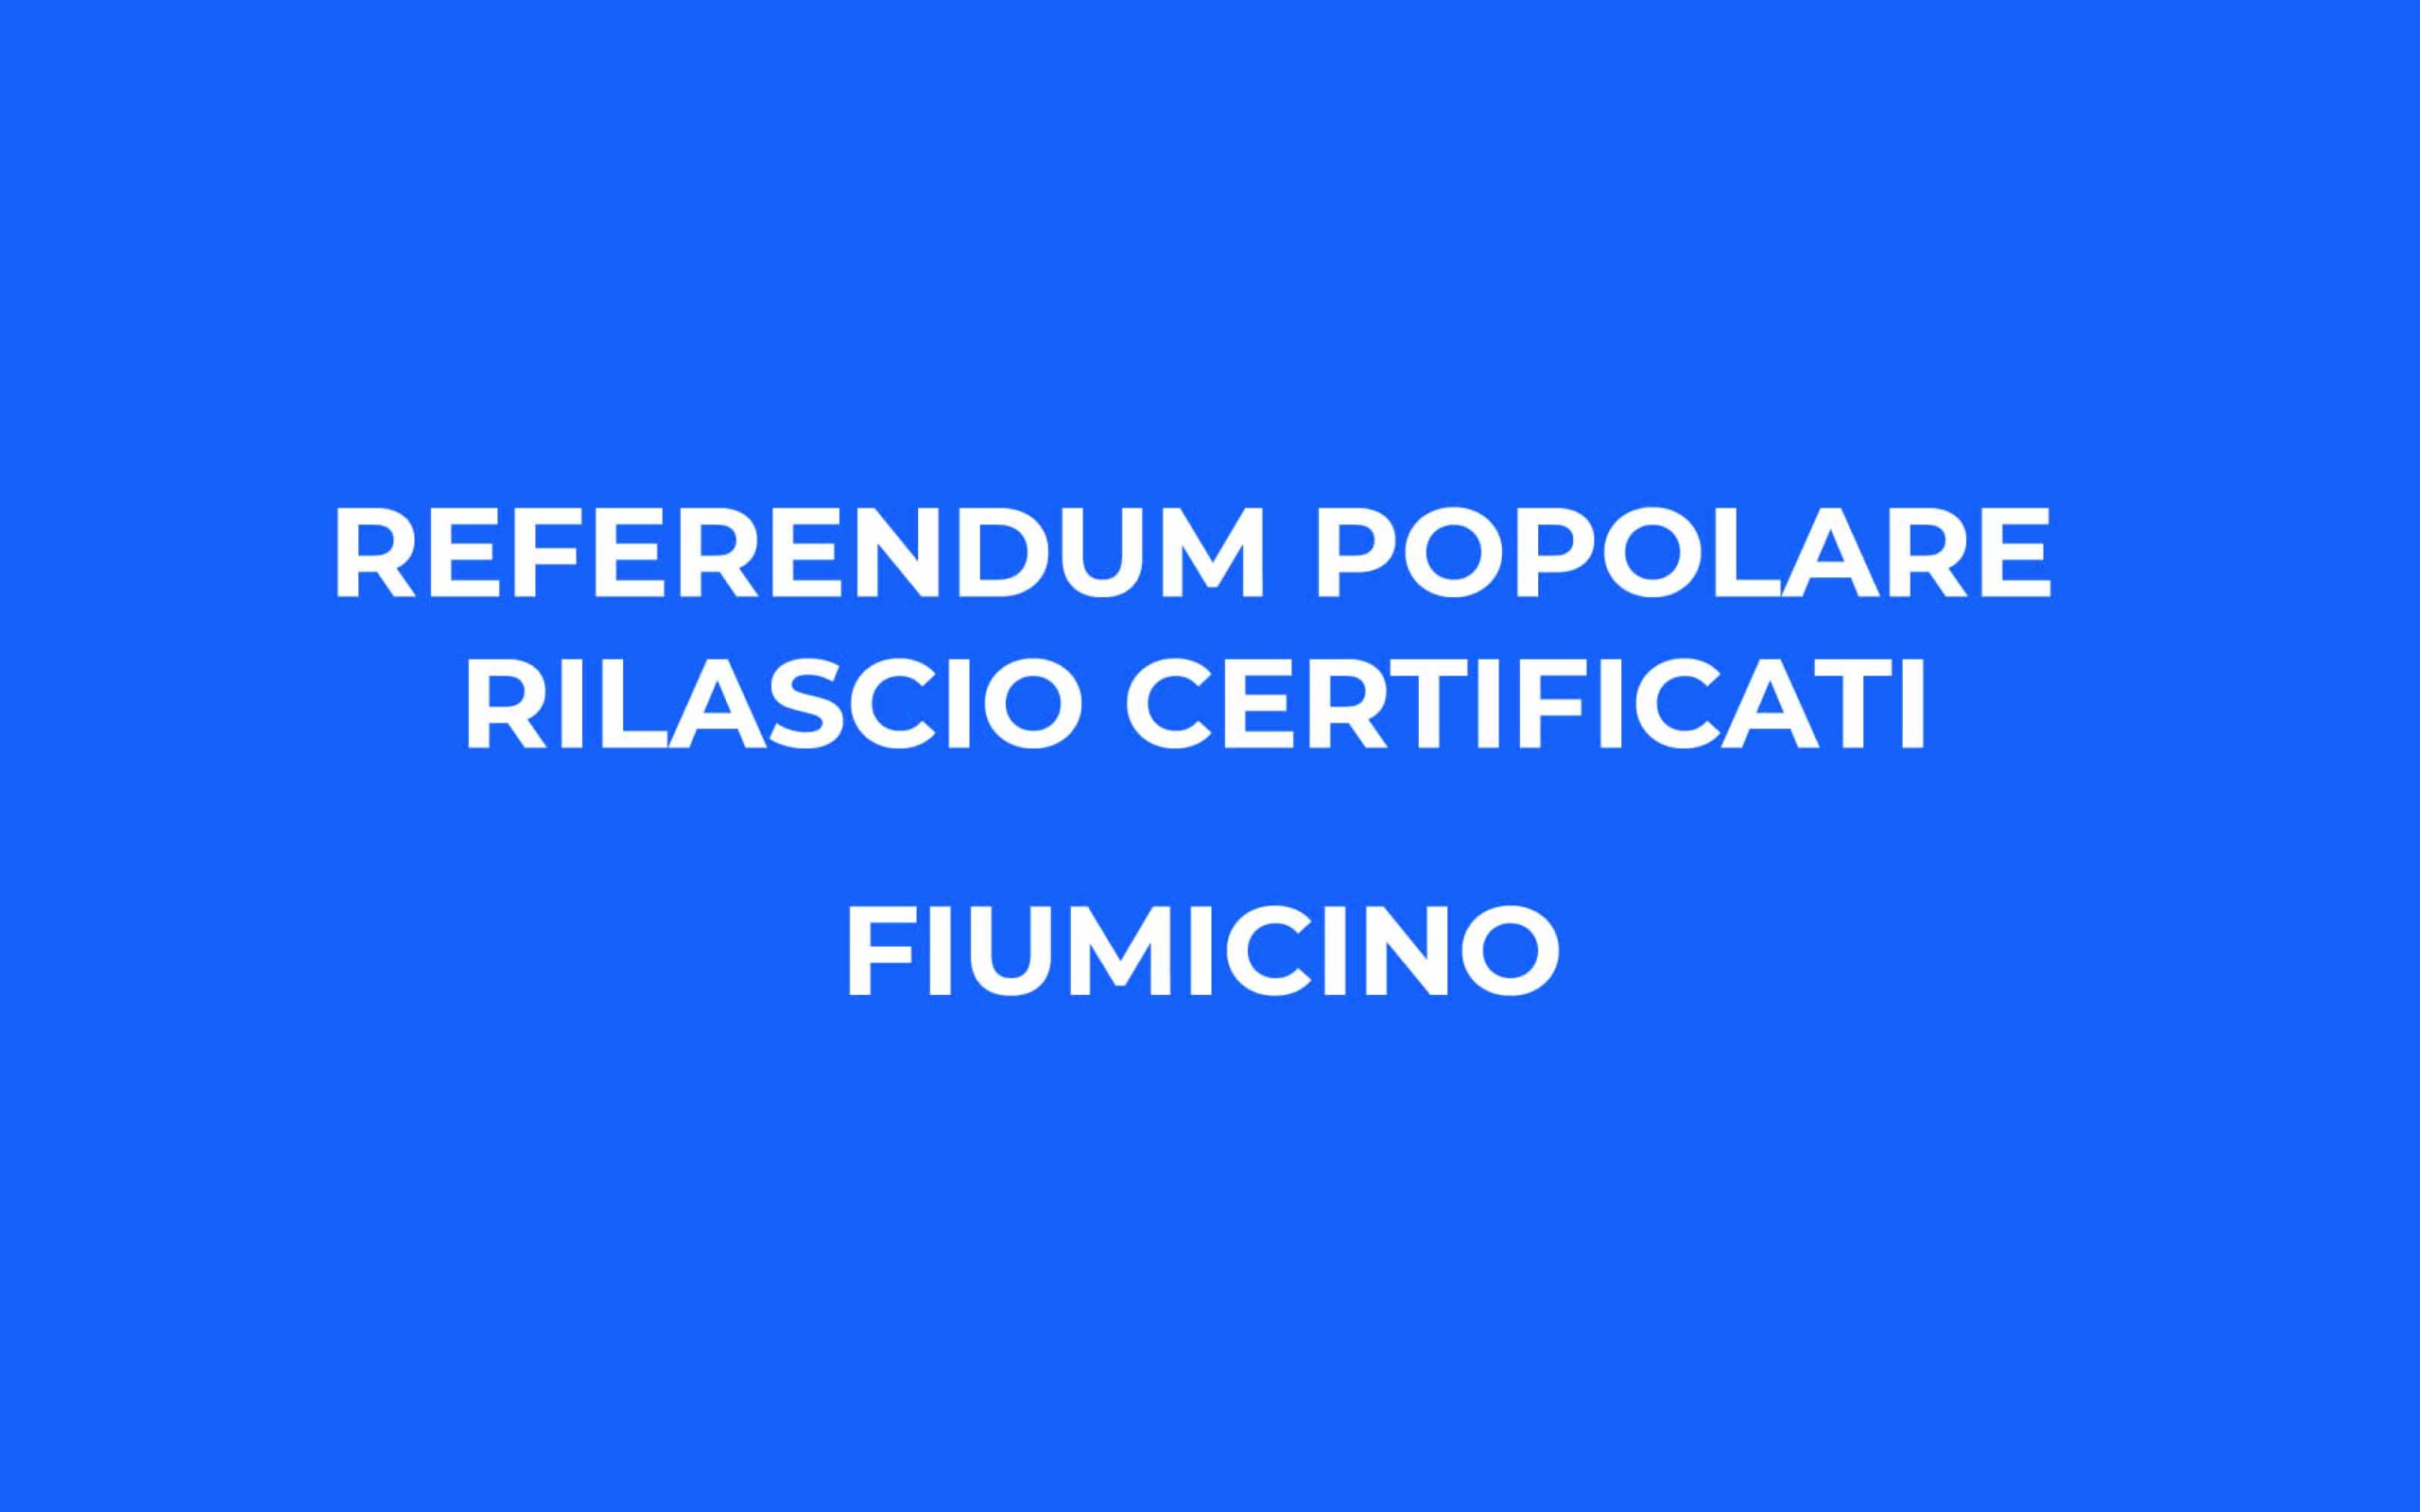 Referendum popolare abrogativo del giorno 12 giugno 2022 – Rilascio certificati